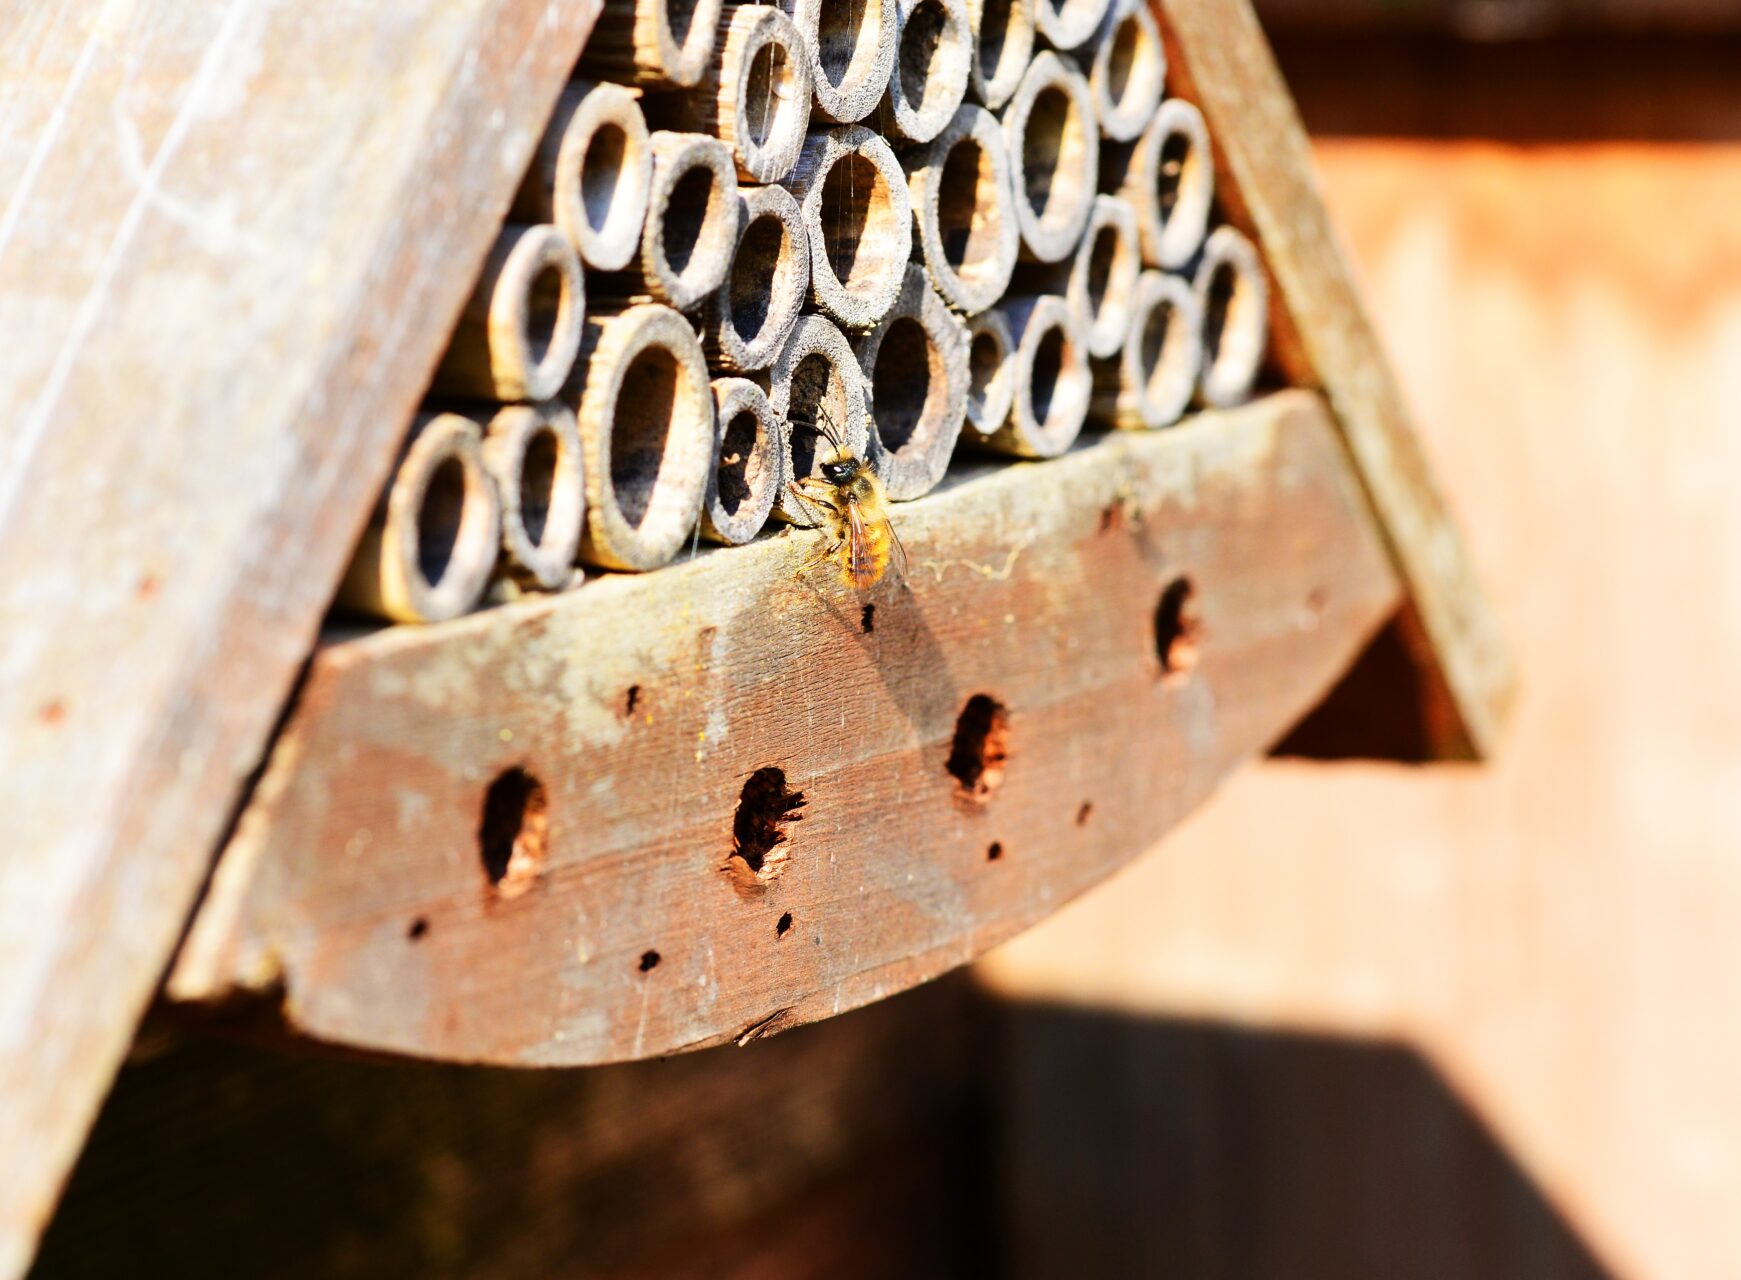 Las abejas Osmia: un fascinante grupo de abejas solitarias api osmie